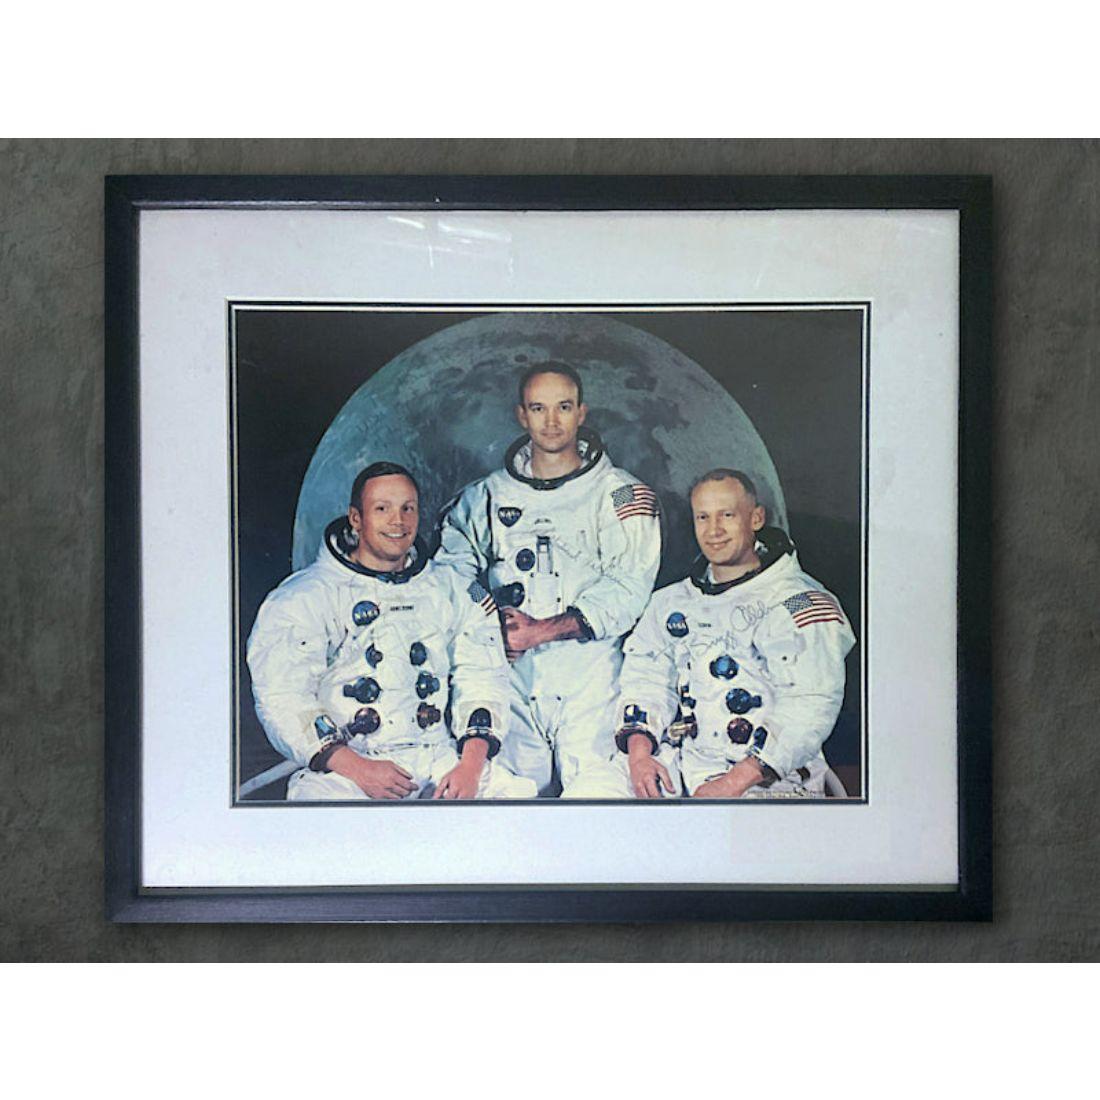 Une superbe photographie surdimensionnée de l'équipage d'Apollo 11, signée par Neil Armstrong, Buzz Aldrin et Michael Collins.

Cette rare photographie surdimensionnée signée de l'équipage d'Apollo 11 mesure 14